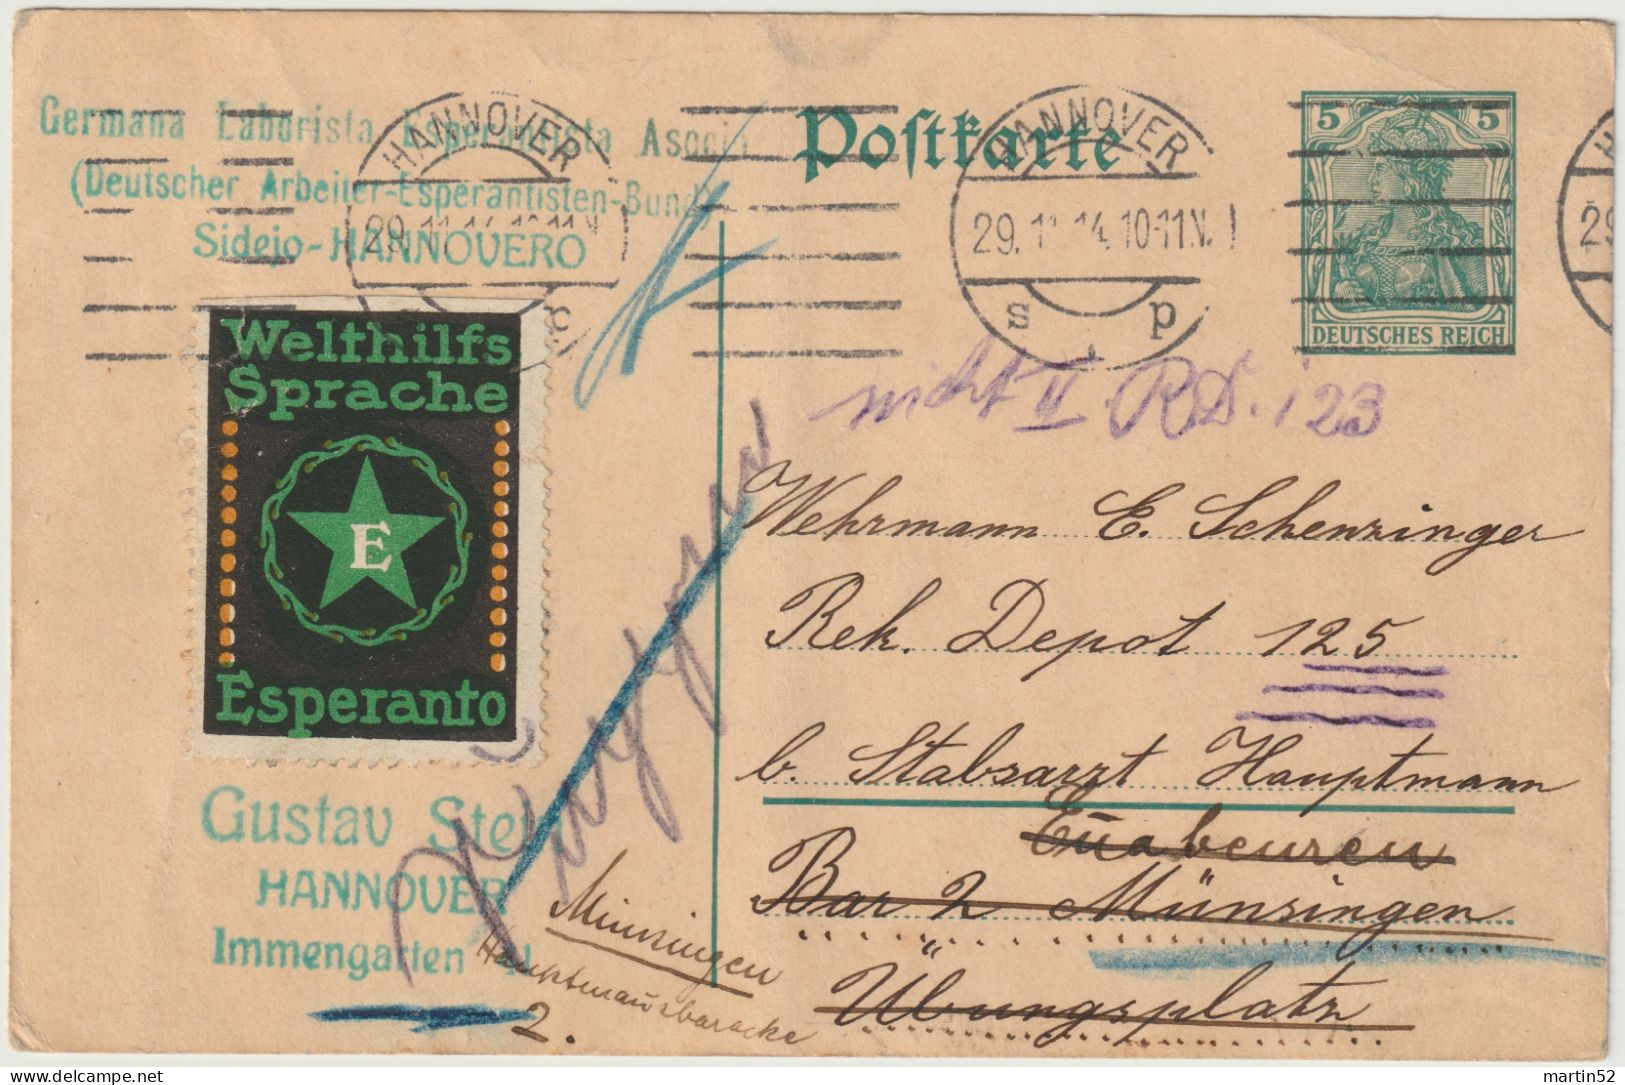 Deutsches Reich Allemagne Germany 1914: Postkarte Mit Vignette "Welthilfs-Sprache Esperanto" Mit ⊙ HANNOVER 29.11.14 - Esperánto